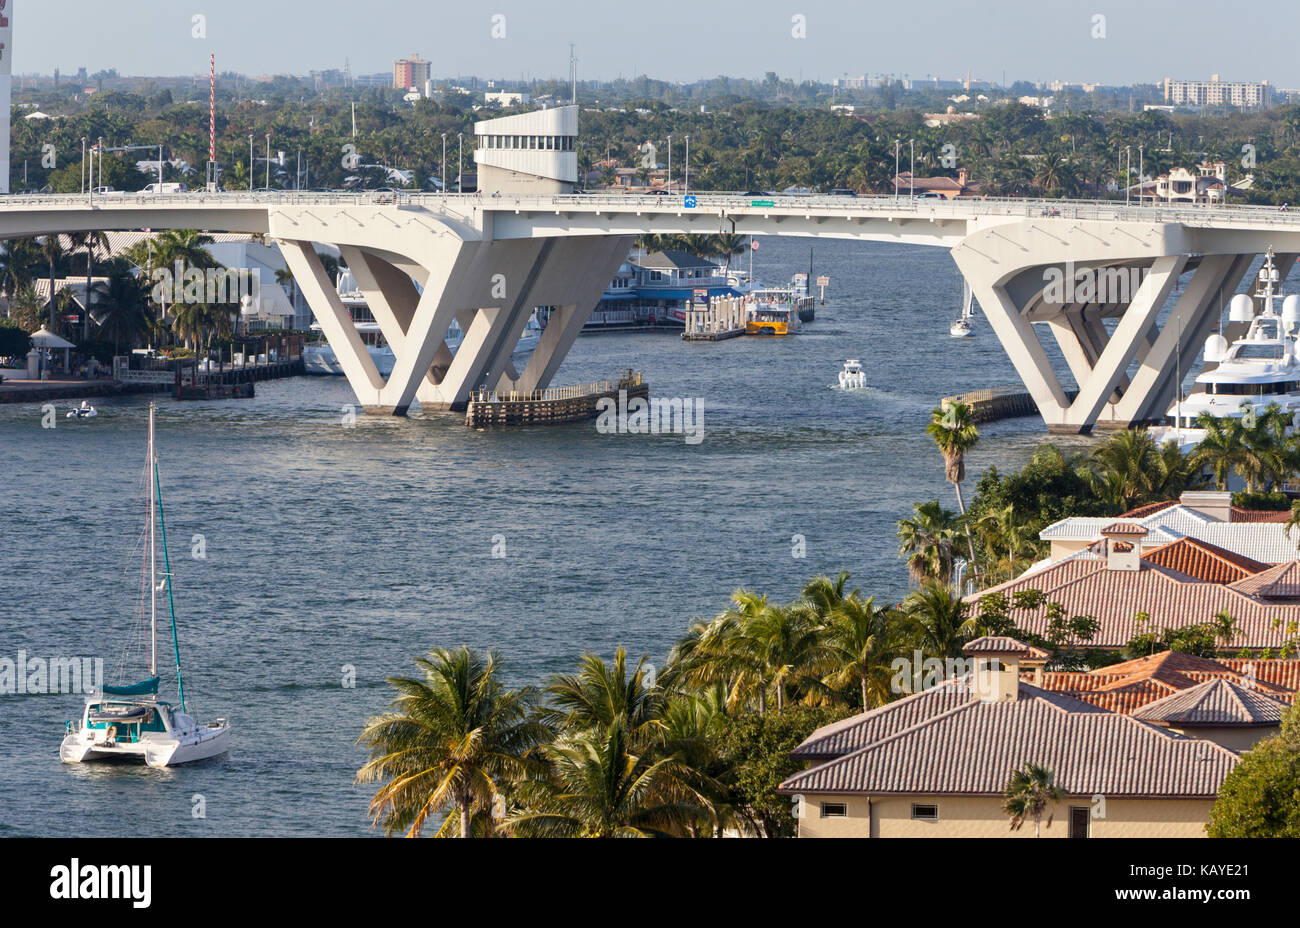 Ft. Lauderdale, en Floride. SE 17th Street Causeway Bridge sur Stranahan River. Banque D'Images